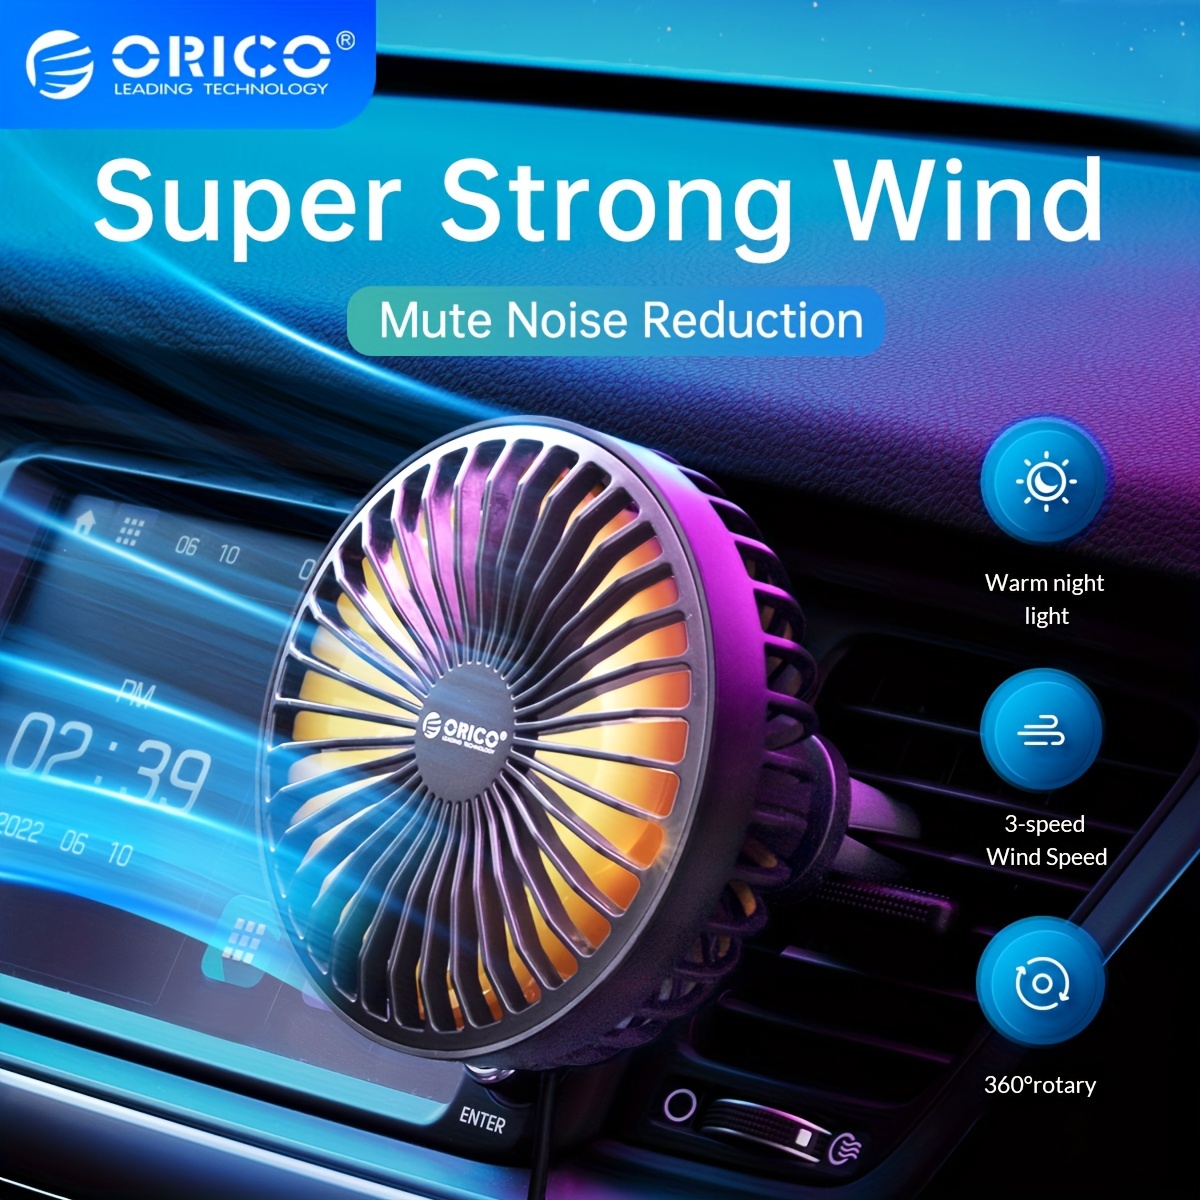 Car Clip Fan 360 Degree Rotating Ventilator Air Cooler Fan